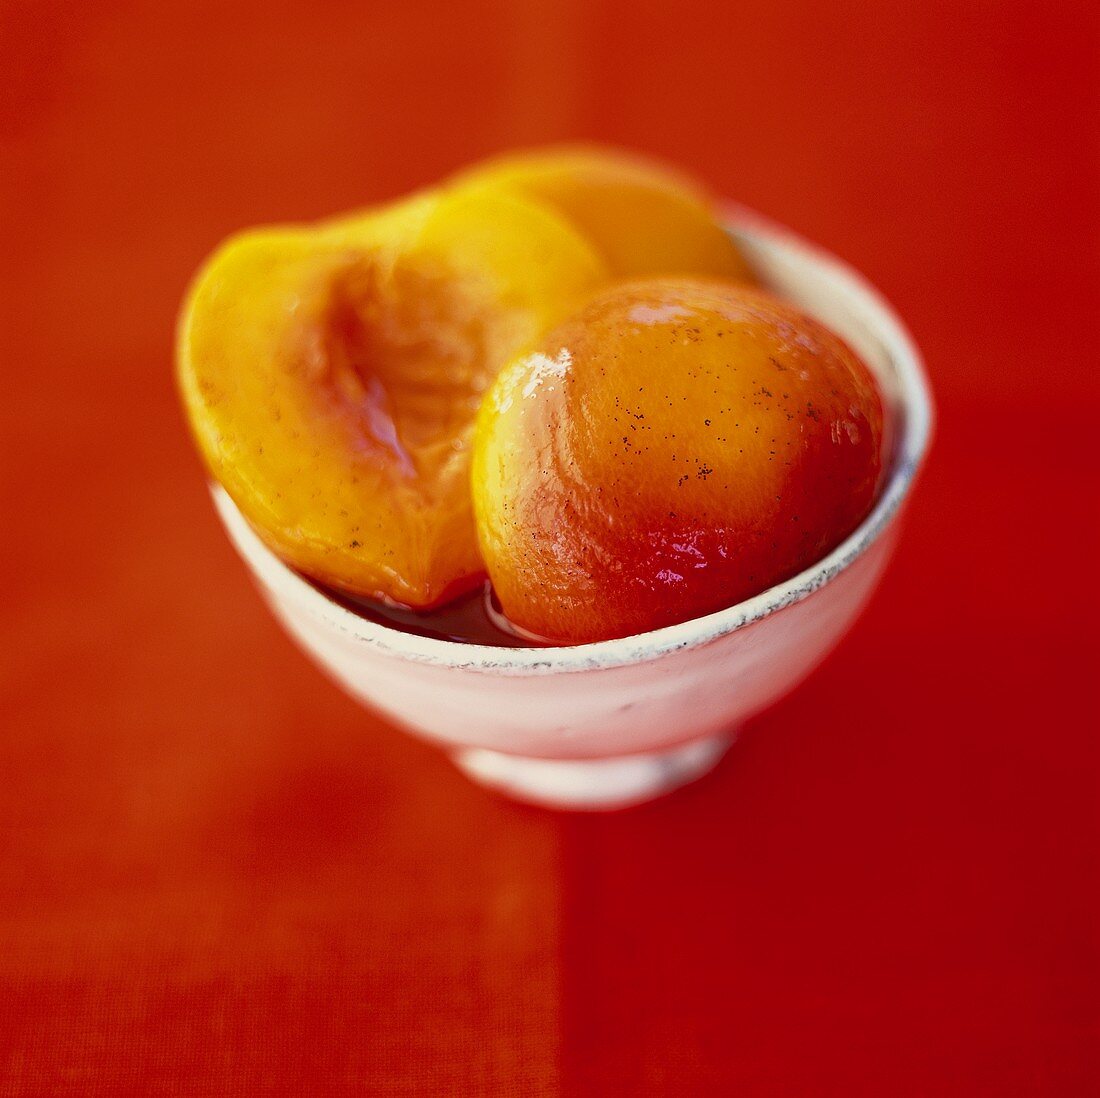 Peach compote in small white bowl